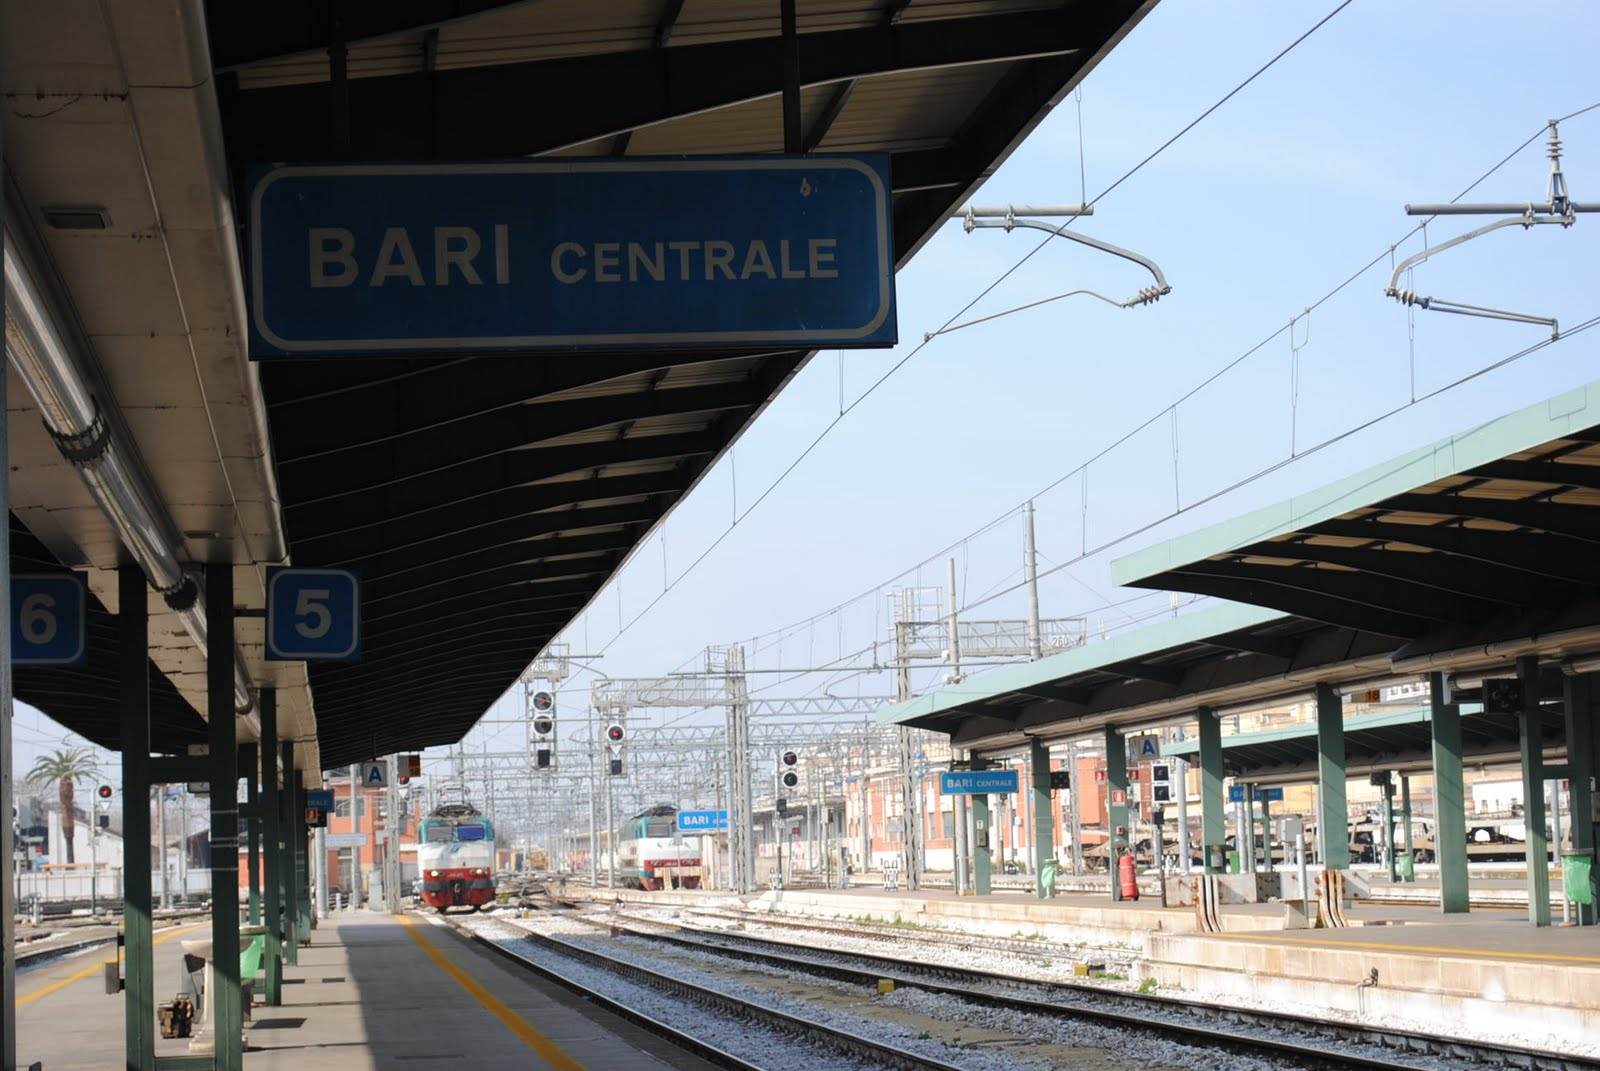 Stazione Bari centrale